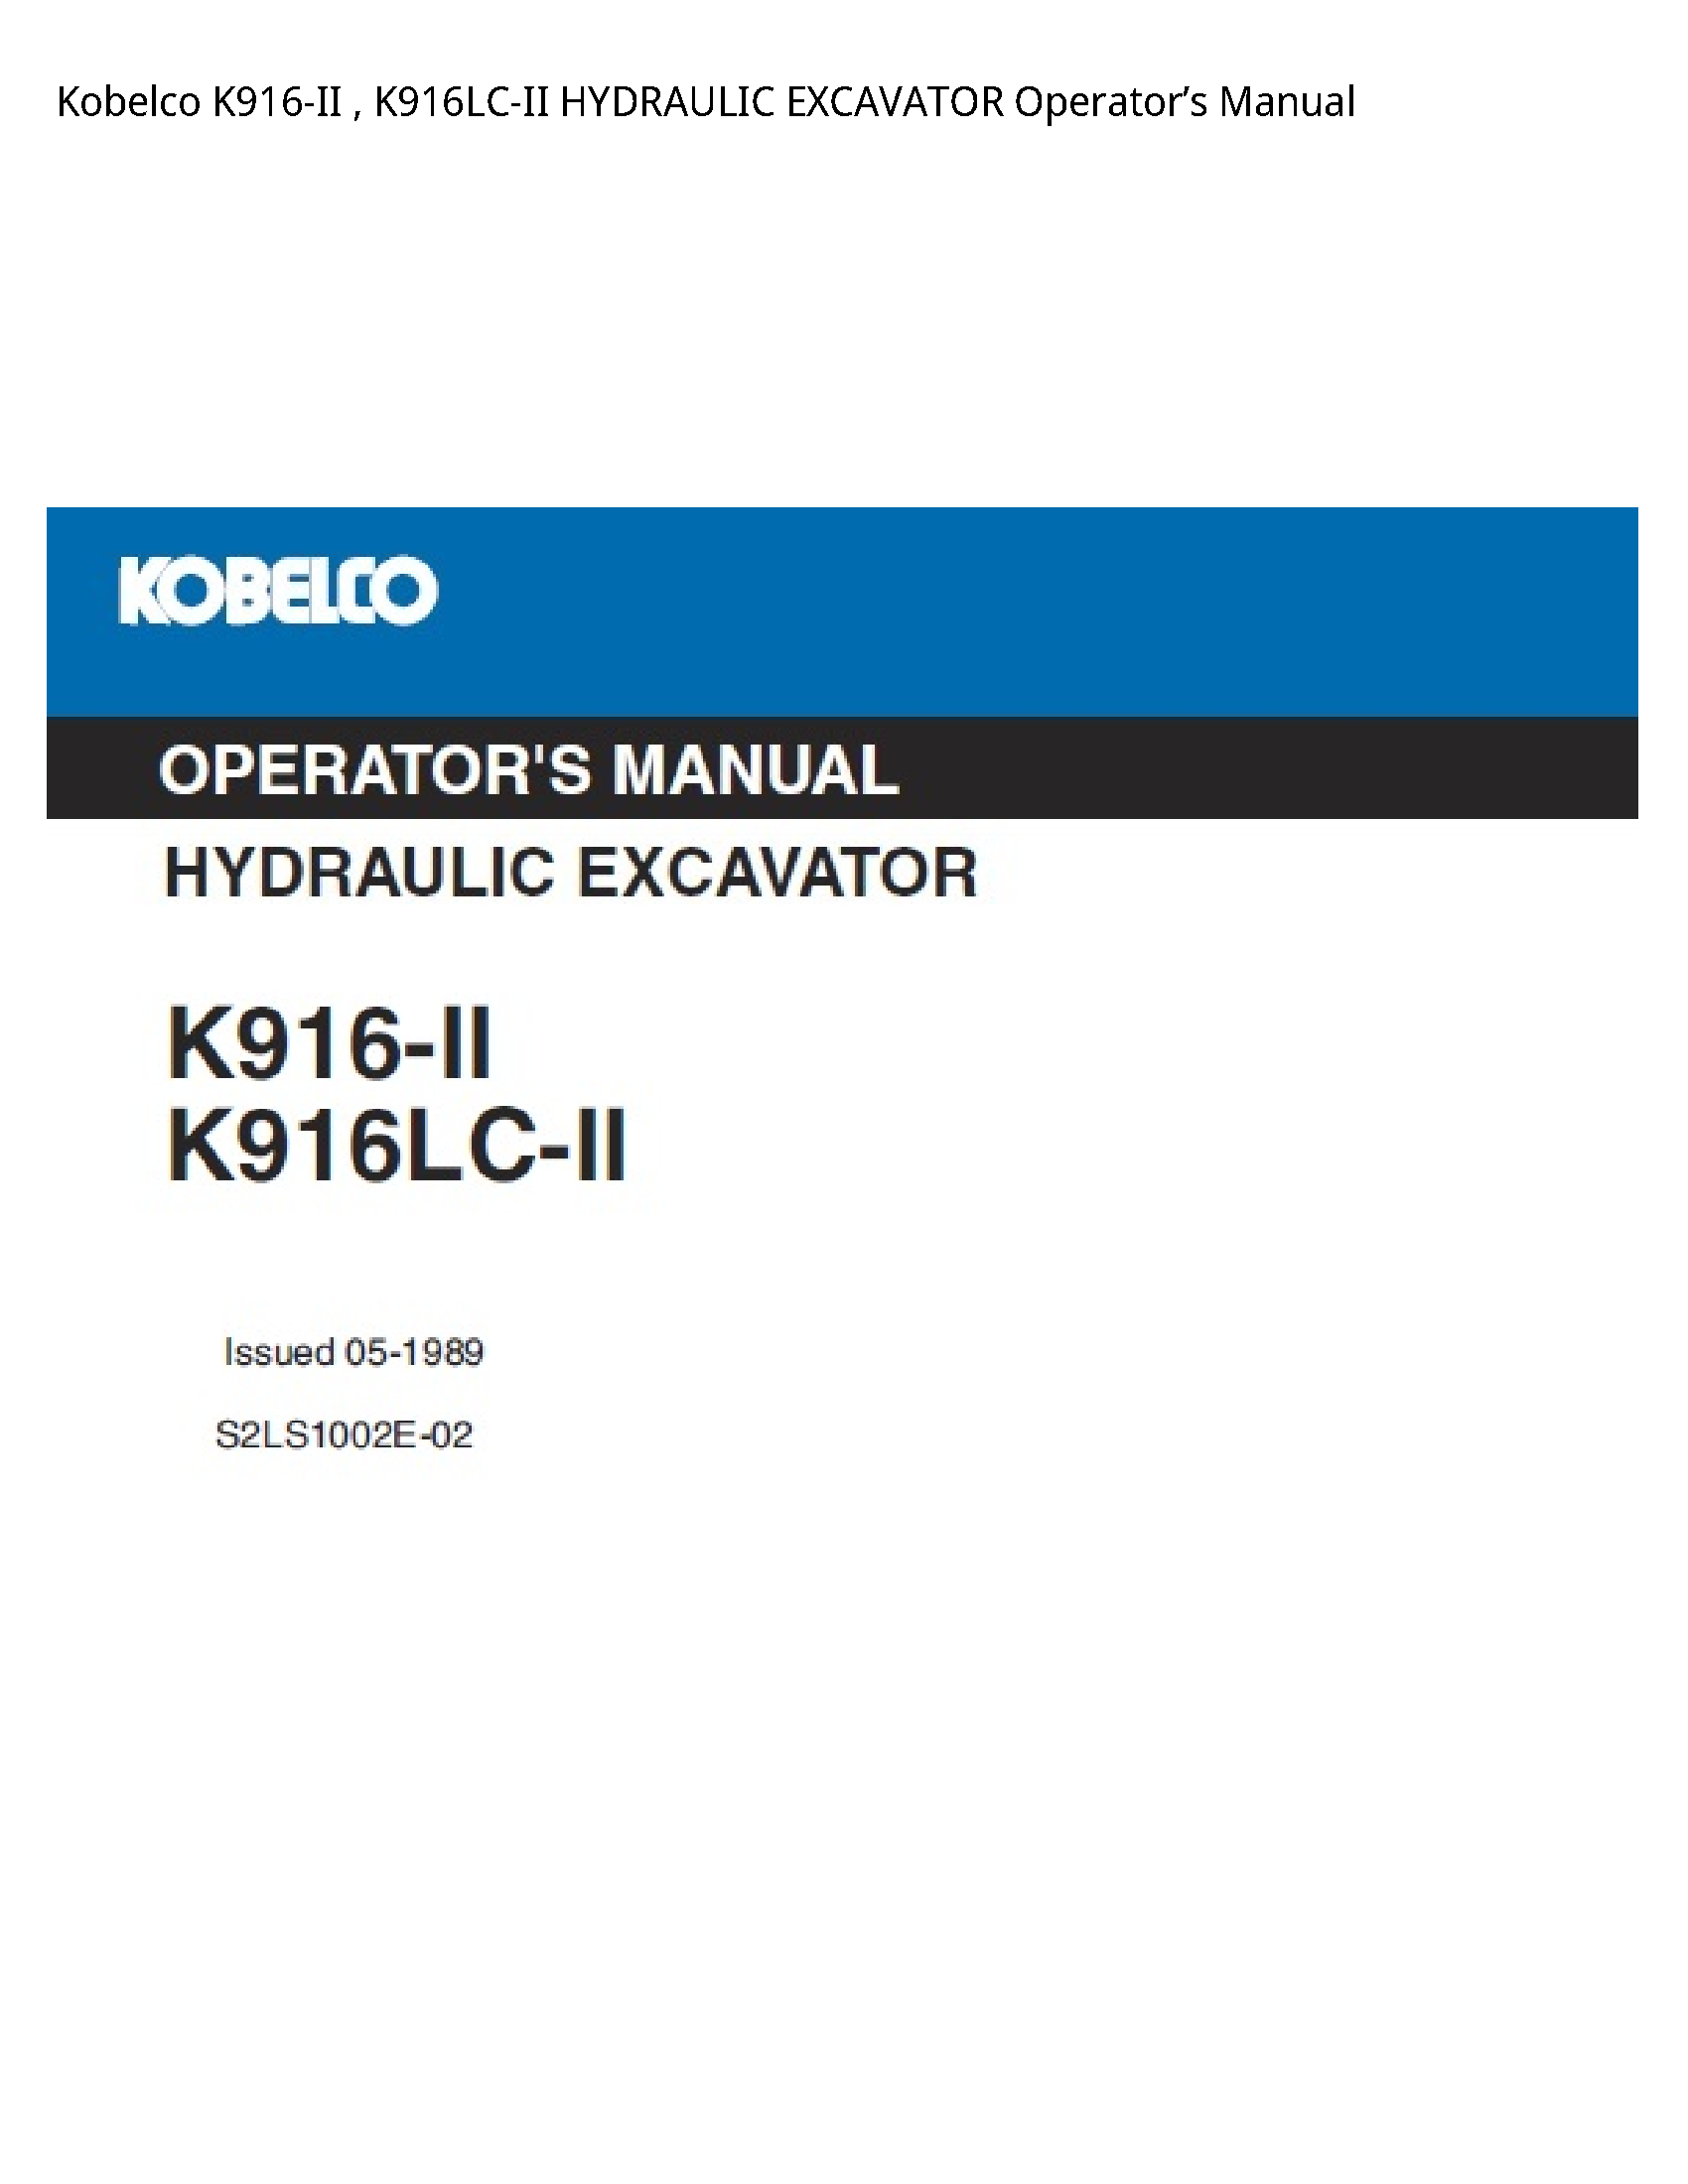 Kobelco K916-II HYDRAULIC EXCAVATOR Operator’s manual